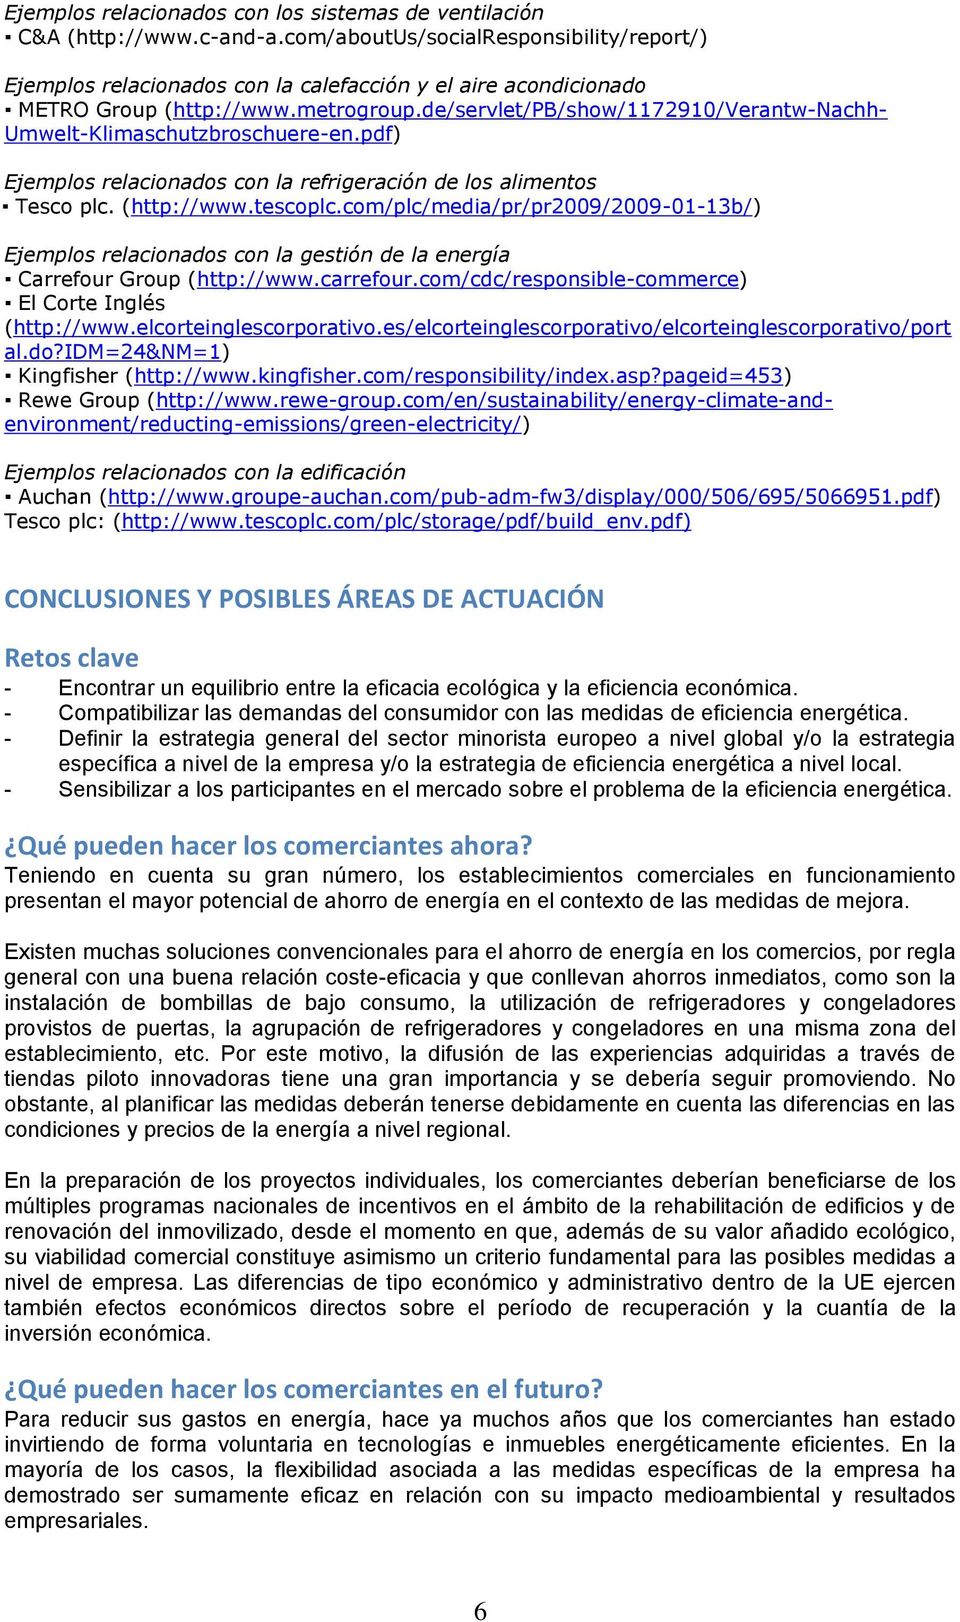 de/servlet/pb/show/1172910/verantw-nachh- Umwelt-Klimaschutzbroschuere-en.pdf) Ejemplos relacionados con la refrigeración de los alimentos Tesco plc. (http://www.tescoplc.